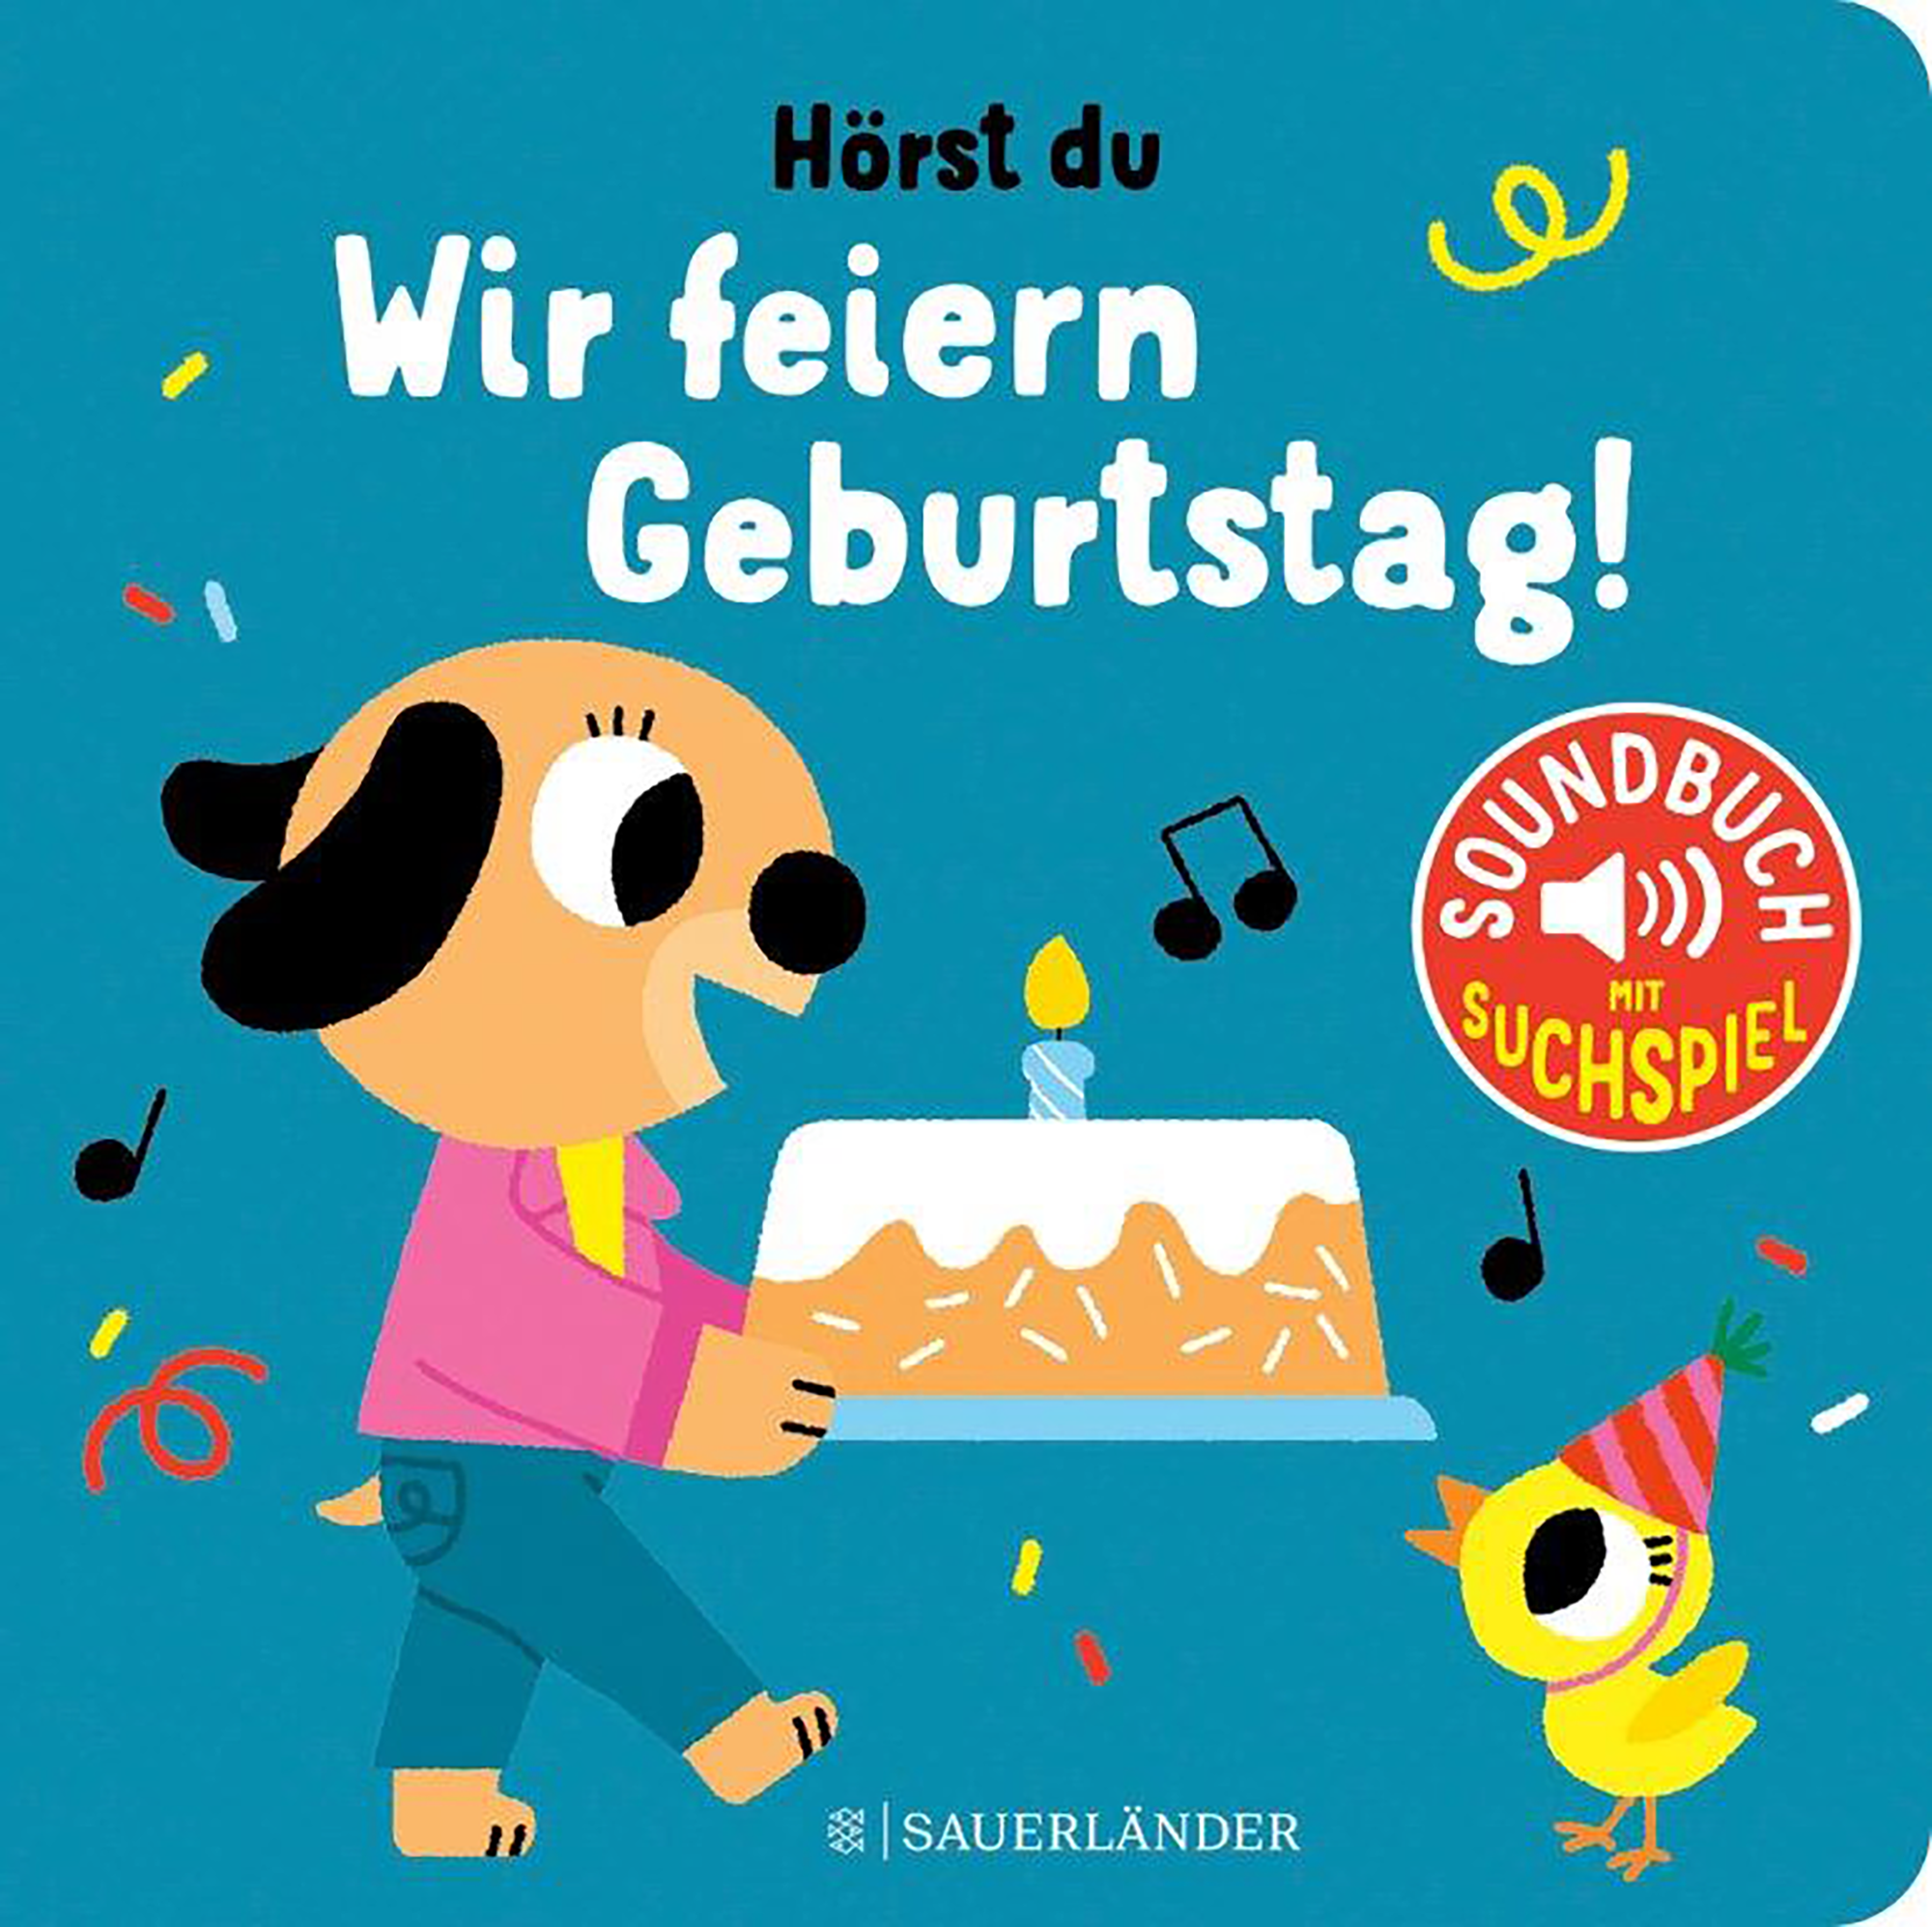 Wir feiern Geburtstag! Sauerländer 2000584959204 1